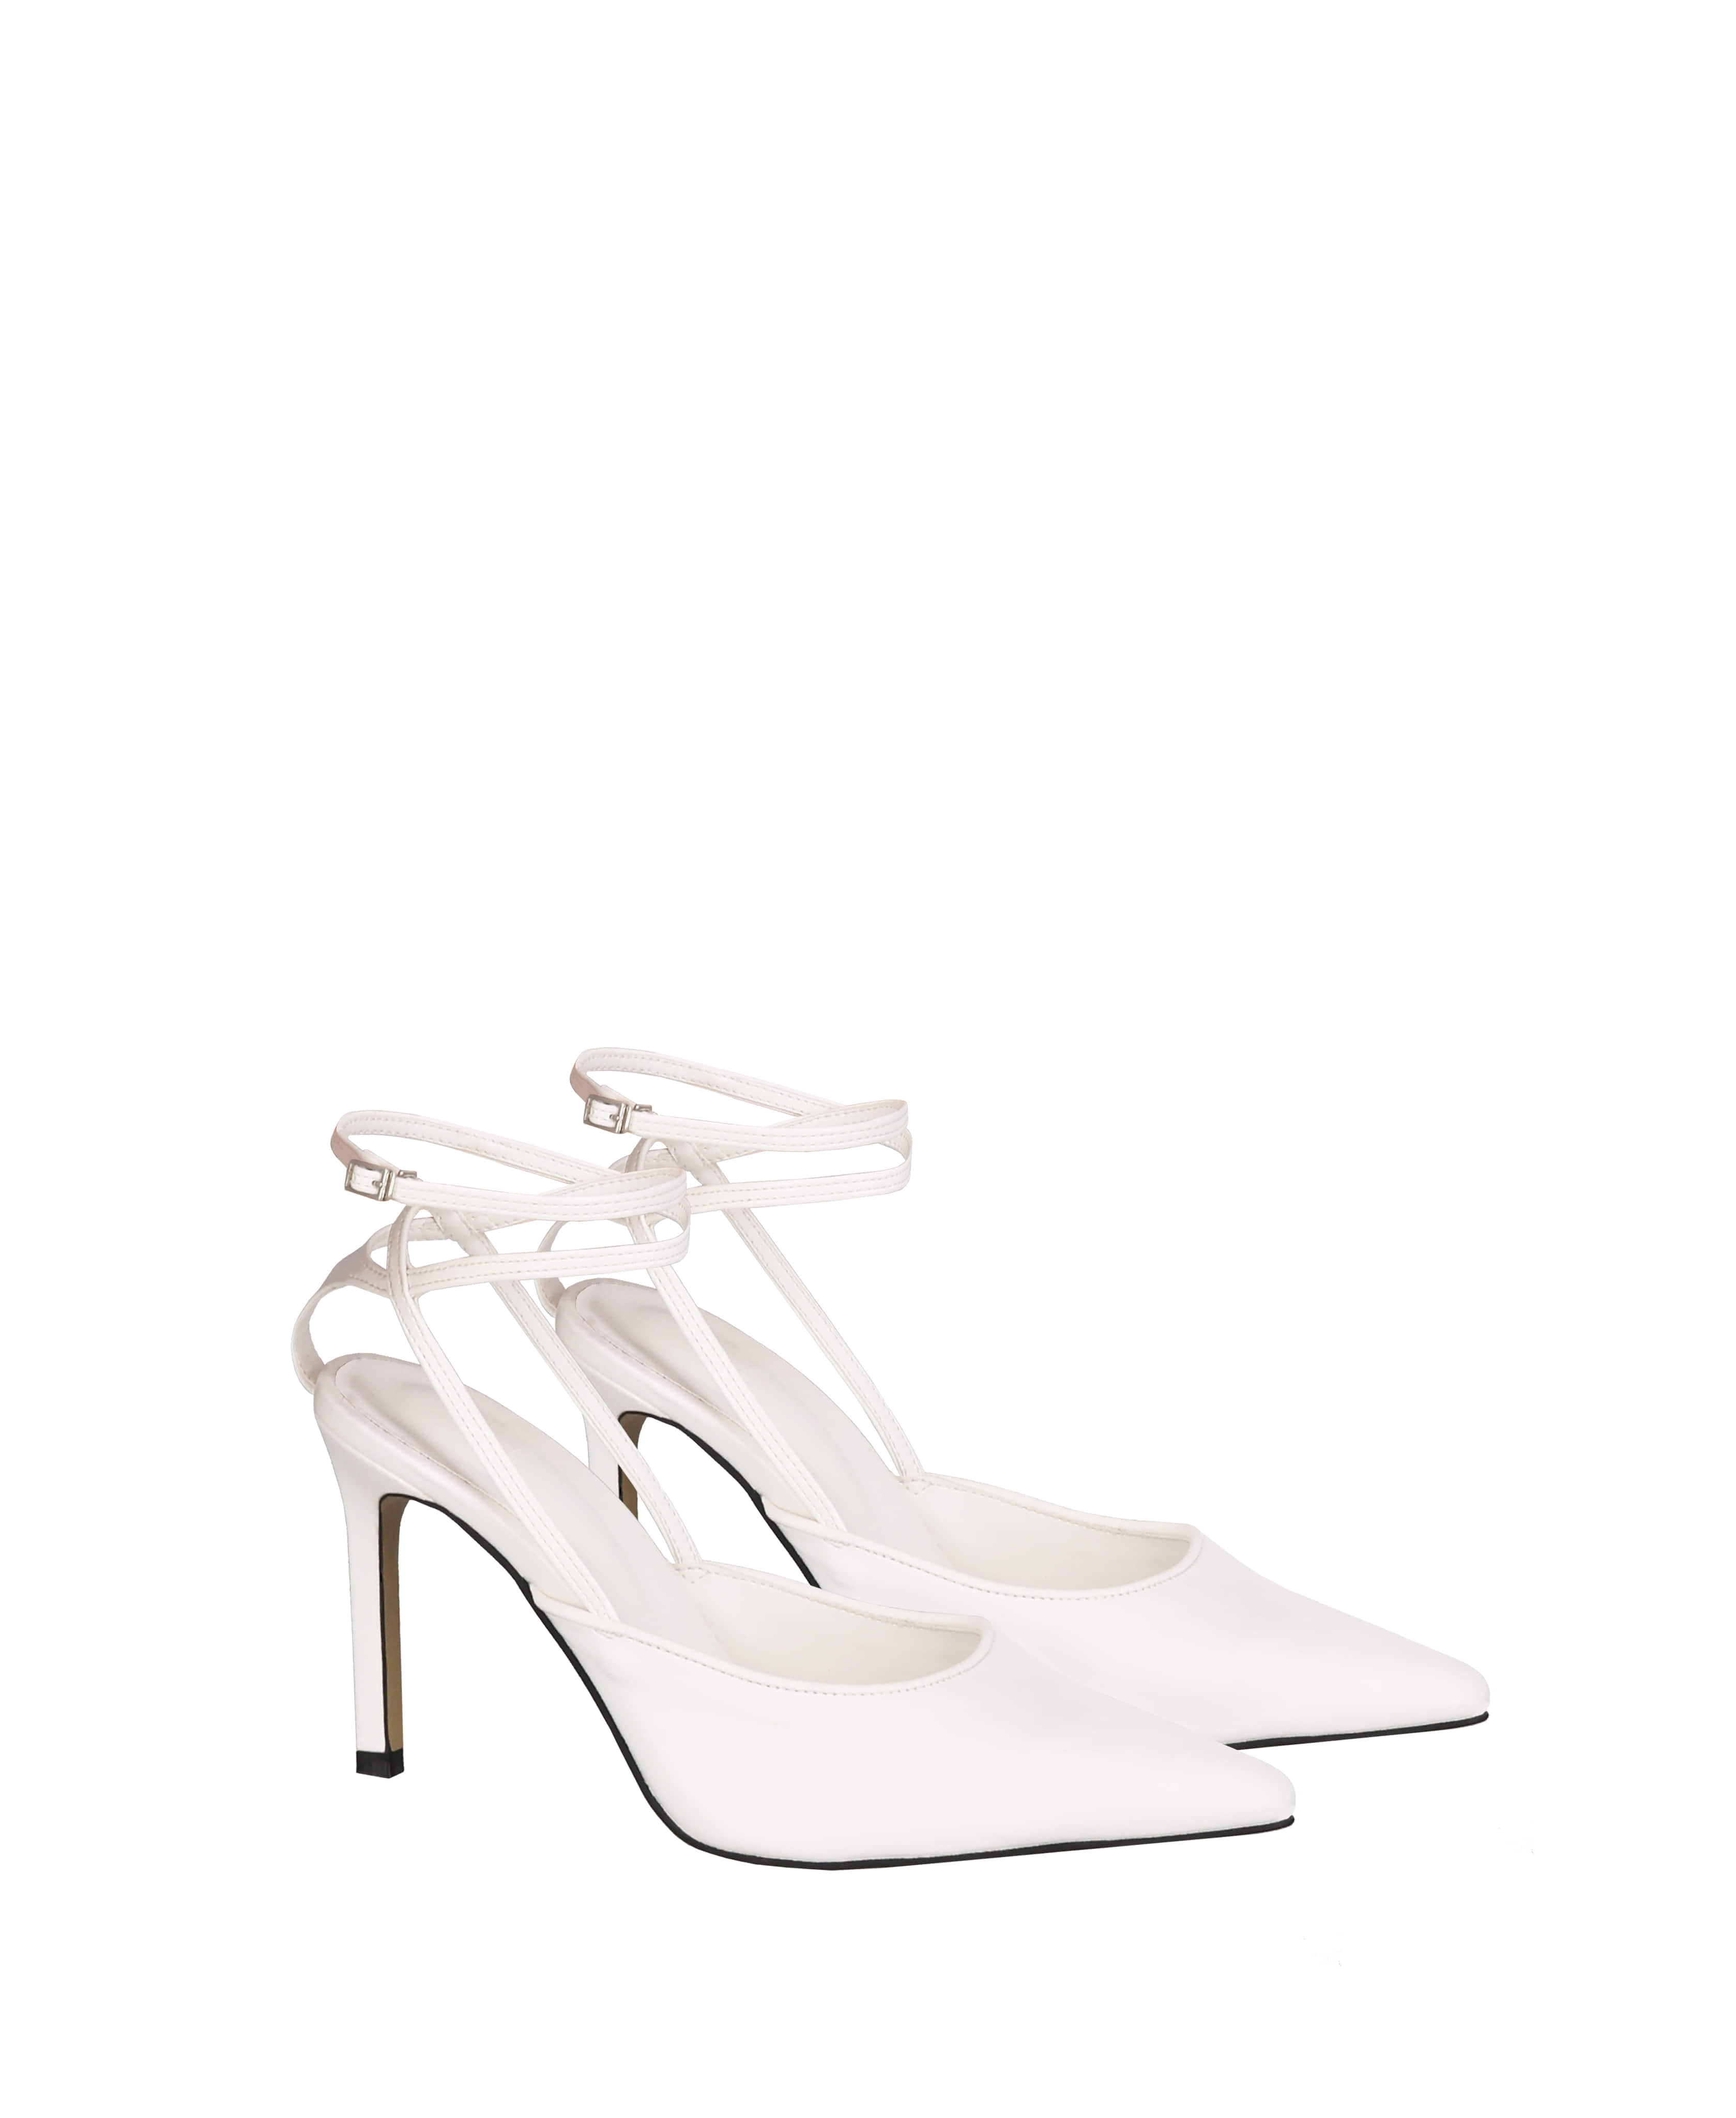 White strap heels